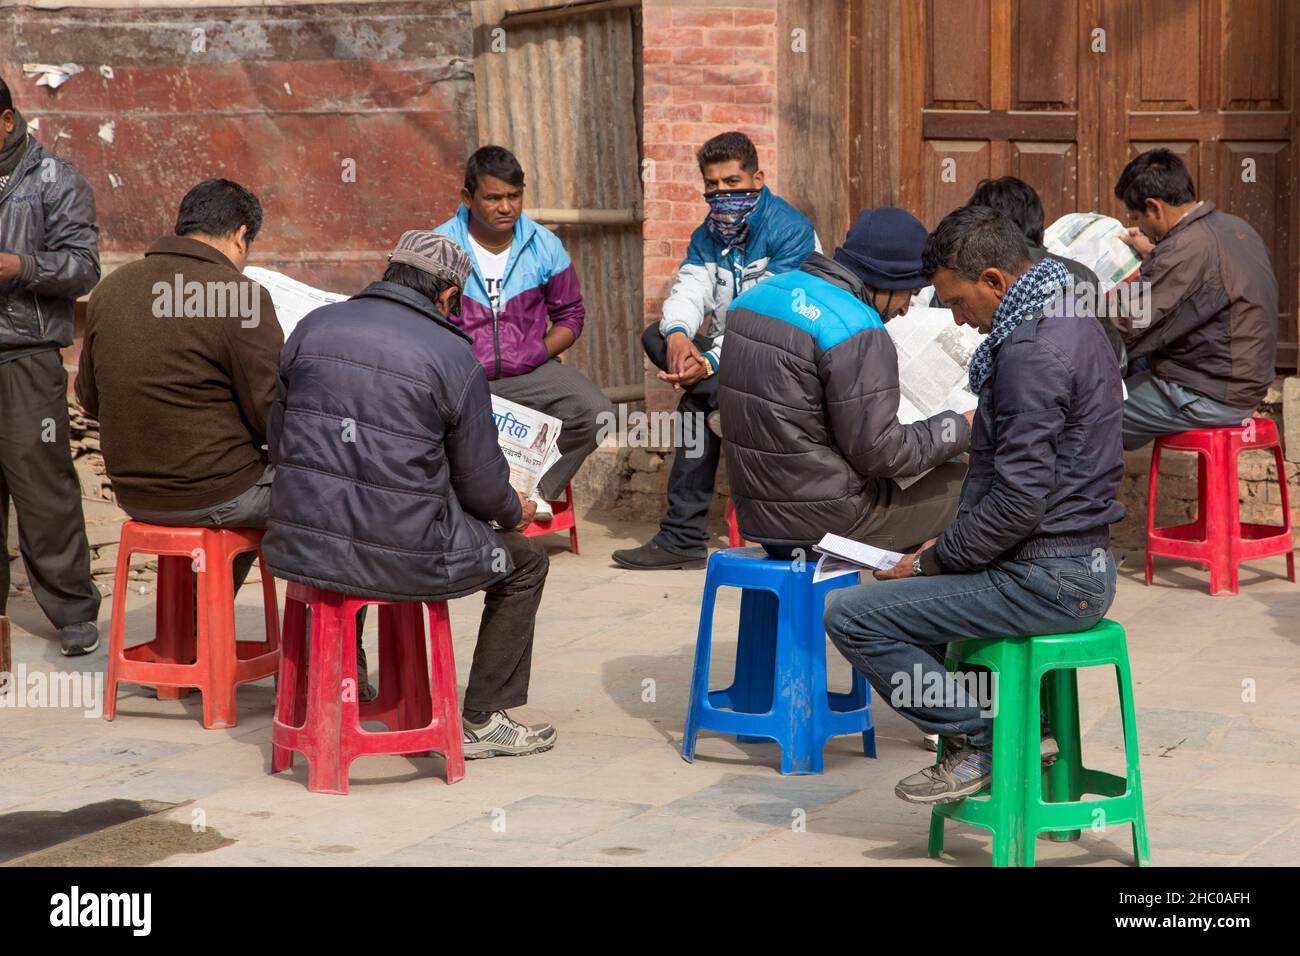 Un gruppo di uomini nepali in abito occidentale seduta su sgabelli e lettura giornali in una piazza a Kathmandu, Nepal. Foto Stock